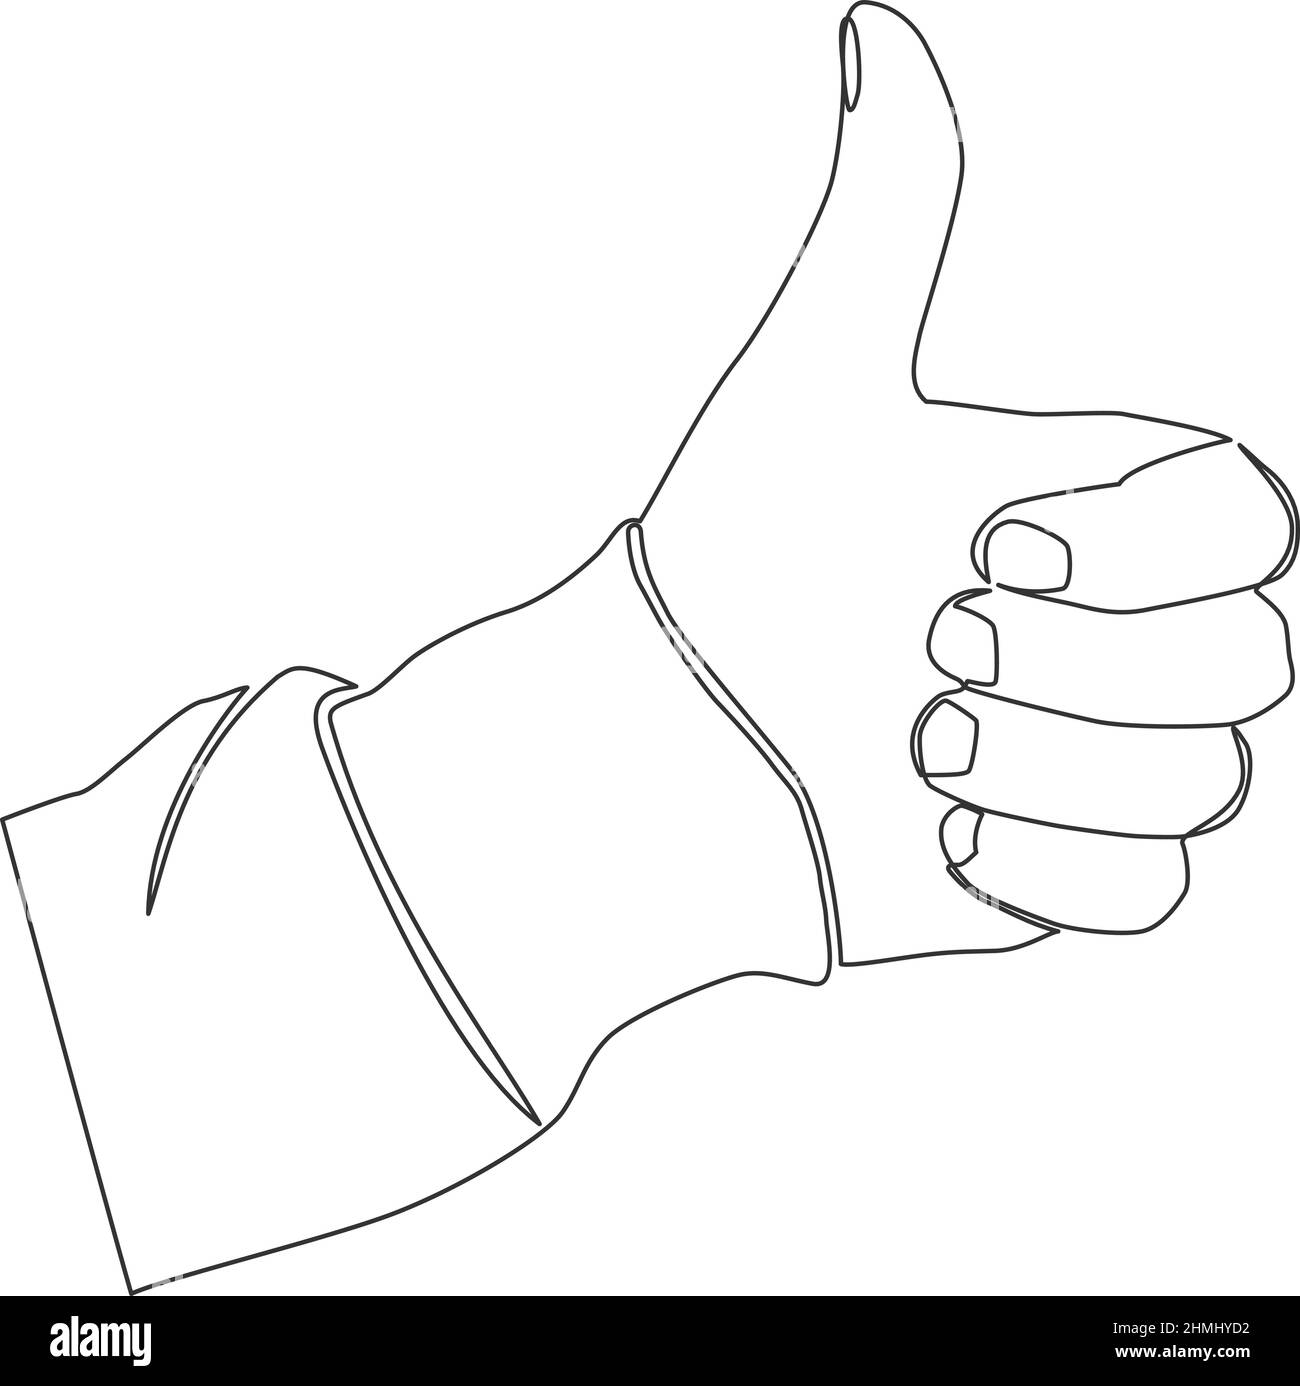 Eine einzelne Linie Zeichnung der Hand tun Daumen nach oben Geste, kontinuierliche Linie Vektor Illustration Stock Vektor